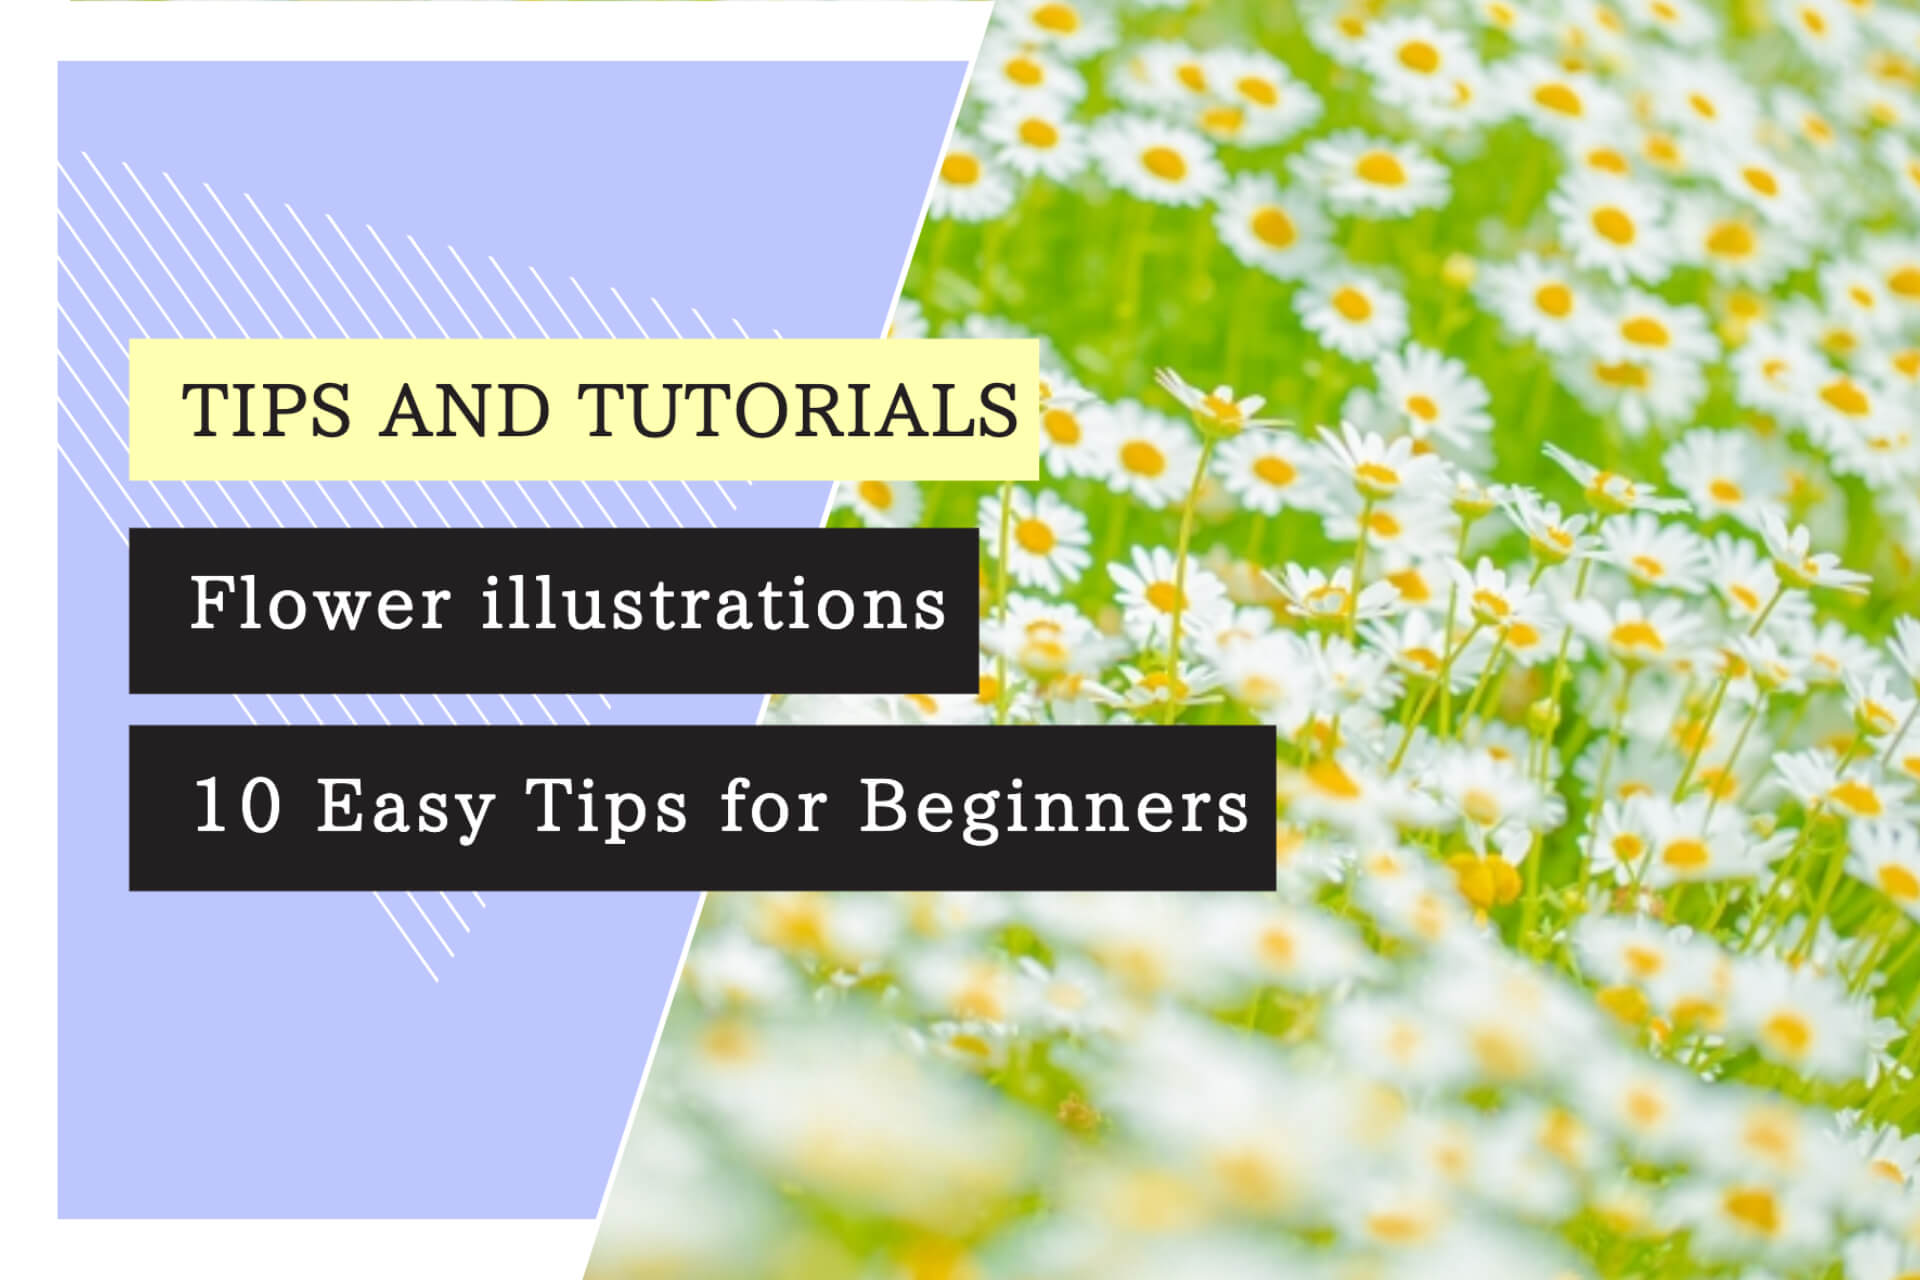 Flower illustrations: 10 Easy Tips for Beginners